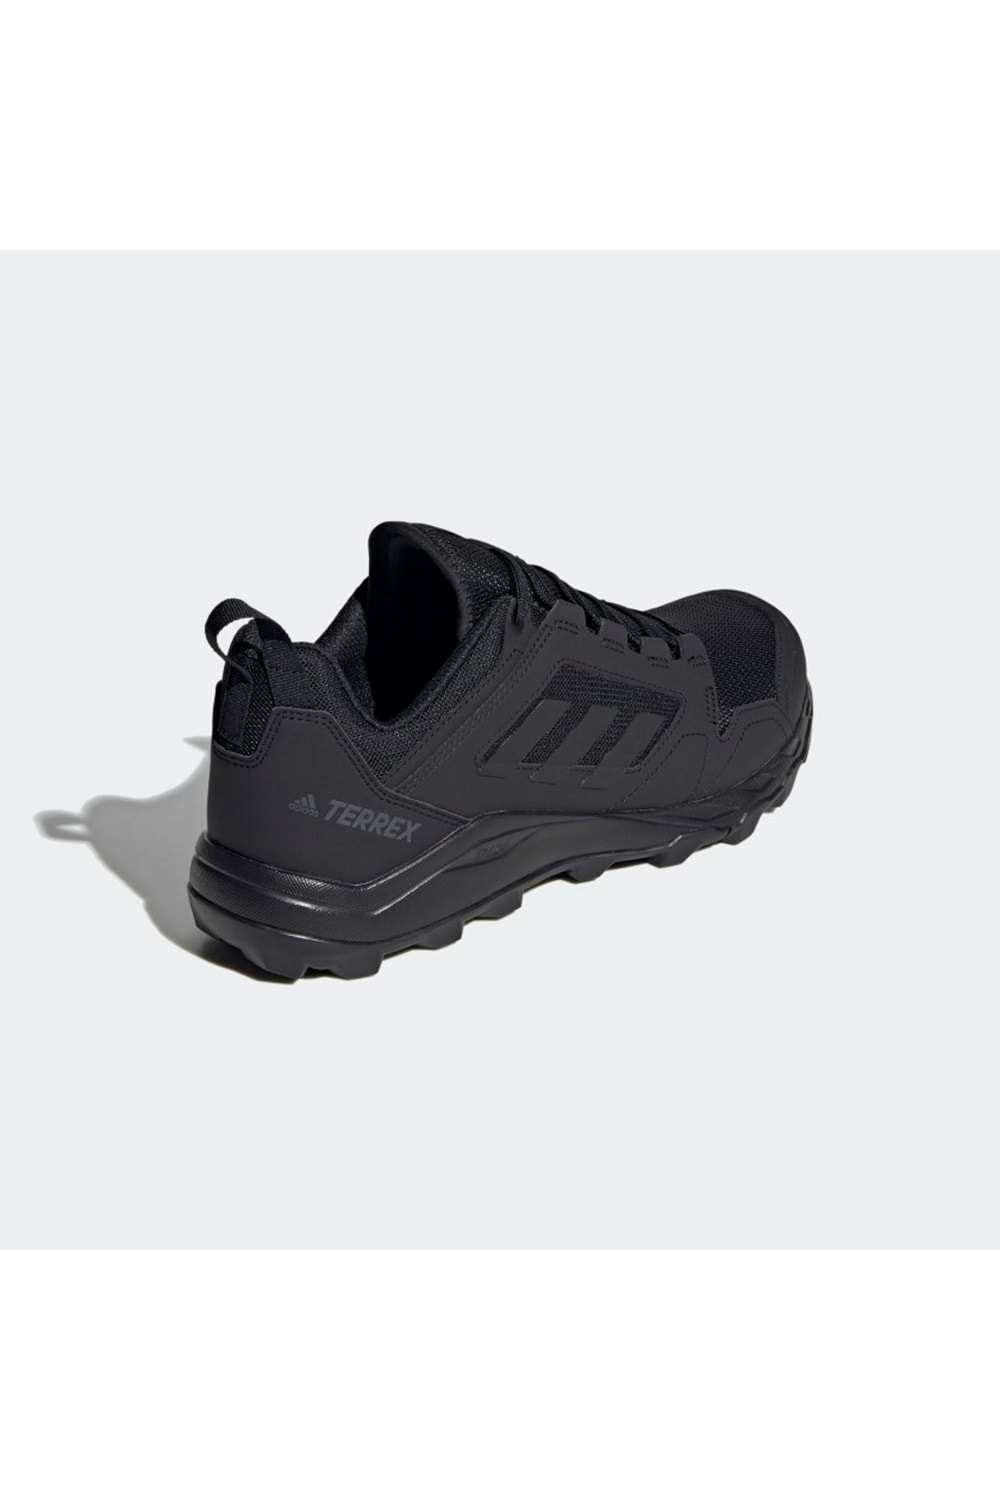 Adidas Terrex Agravic TR Siyah Erkek Outdoor Spor Ayakkabı